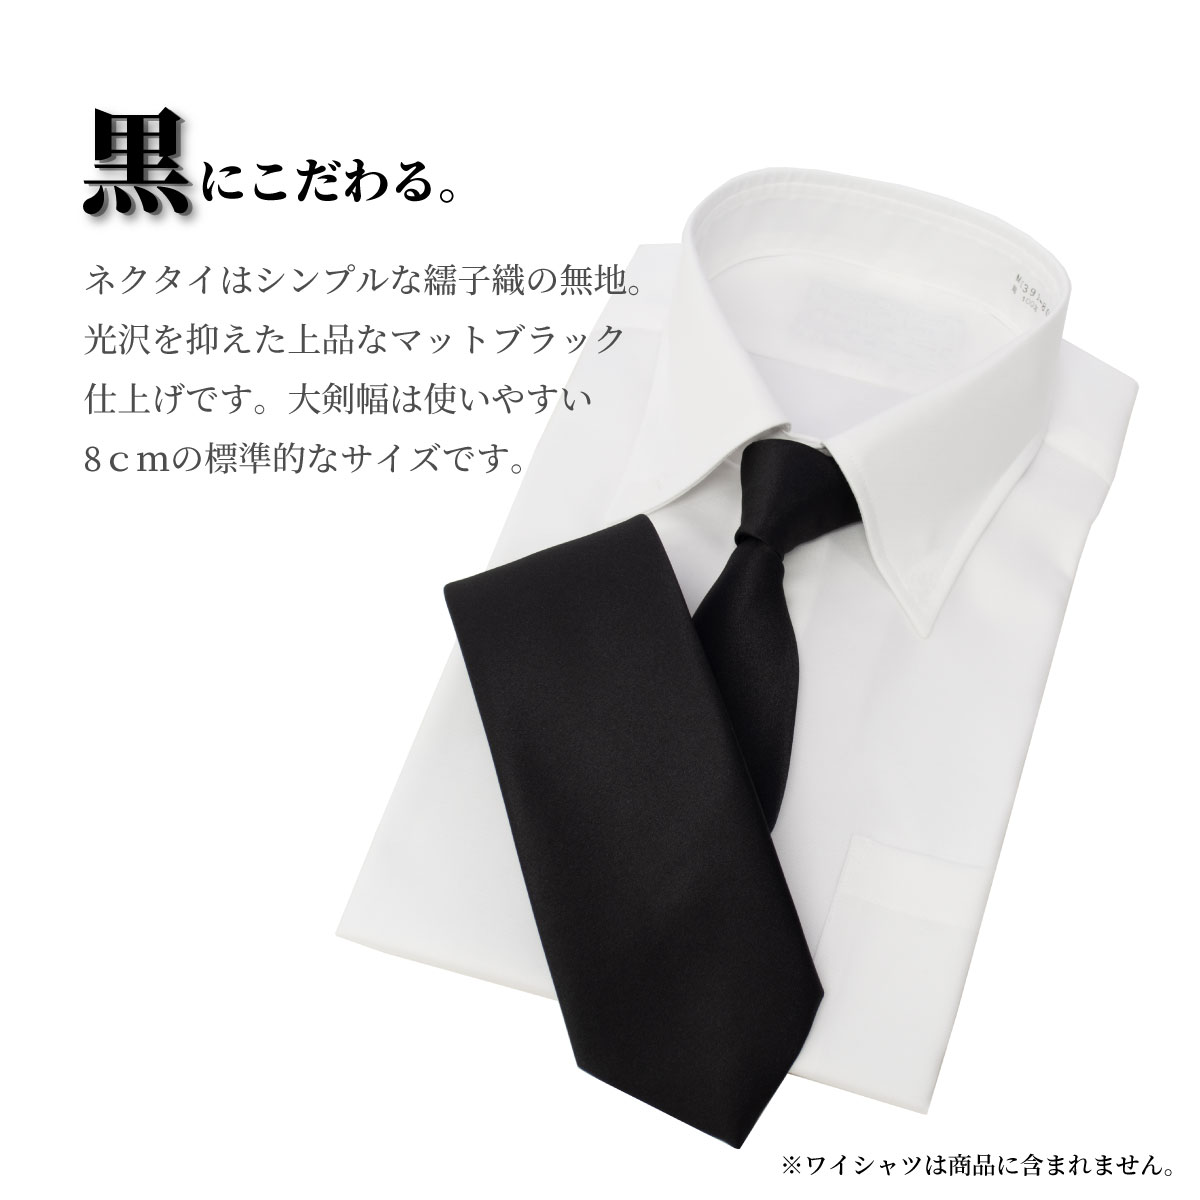  галстук чёрный сделано в Японии чёрный галстук . одежда . оборудование . тип закон необходимо . через ночь .. поминальная служба . другой тип праздничные обряды O-Bon ... четки формальный одноцветный бесплатная доставка r100